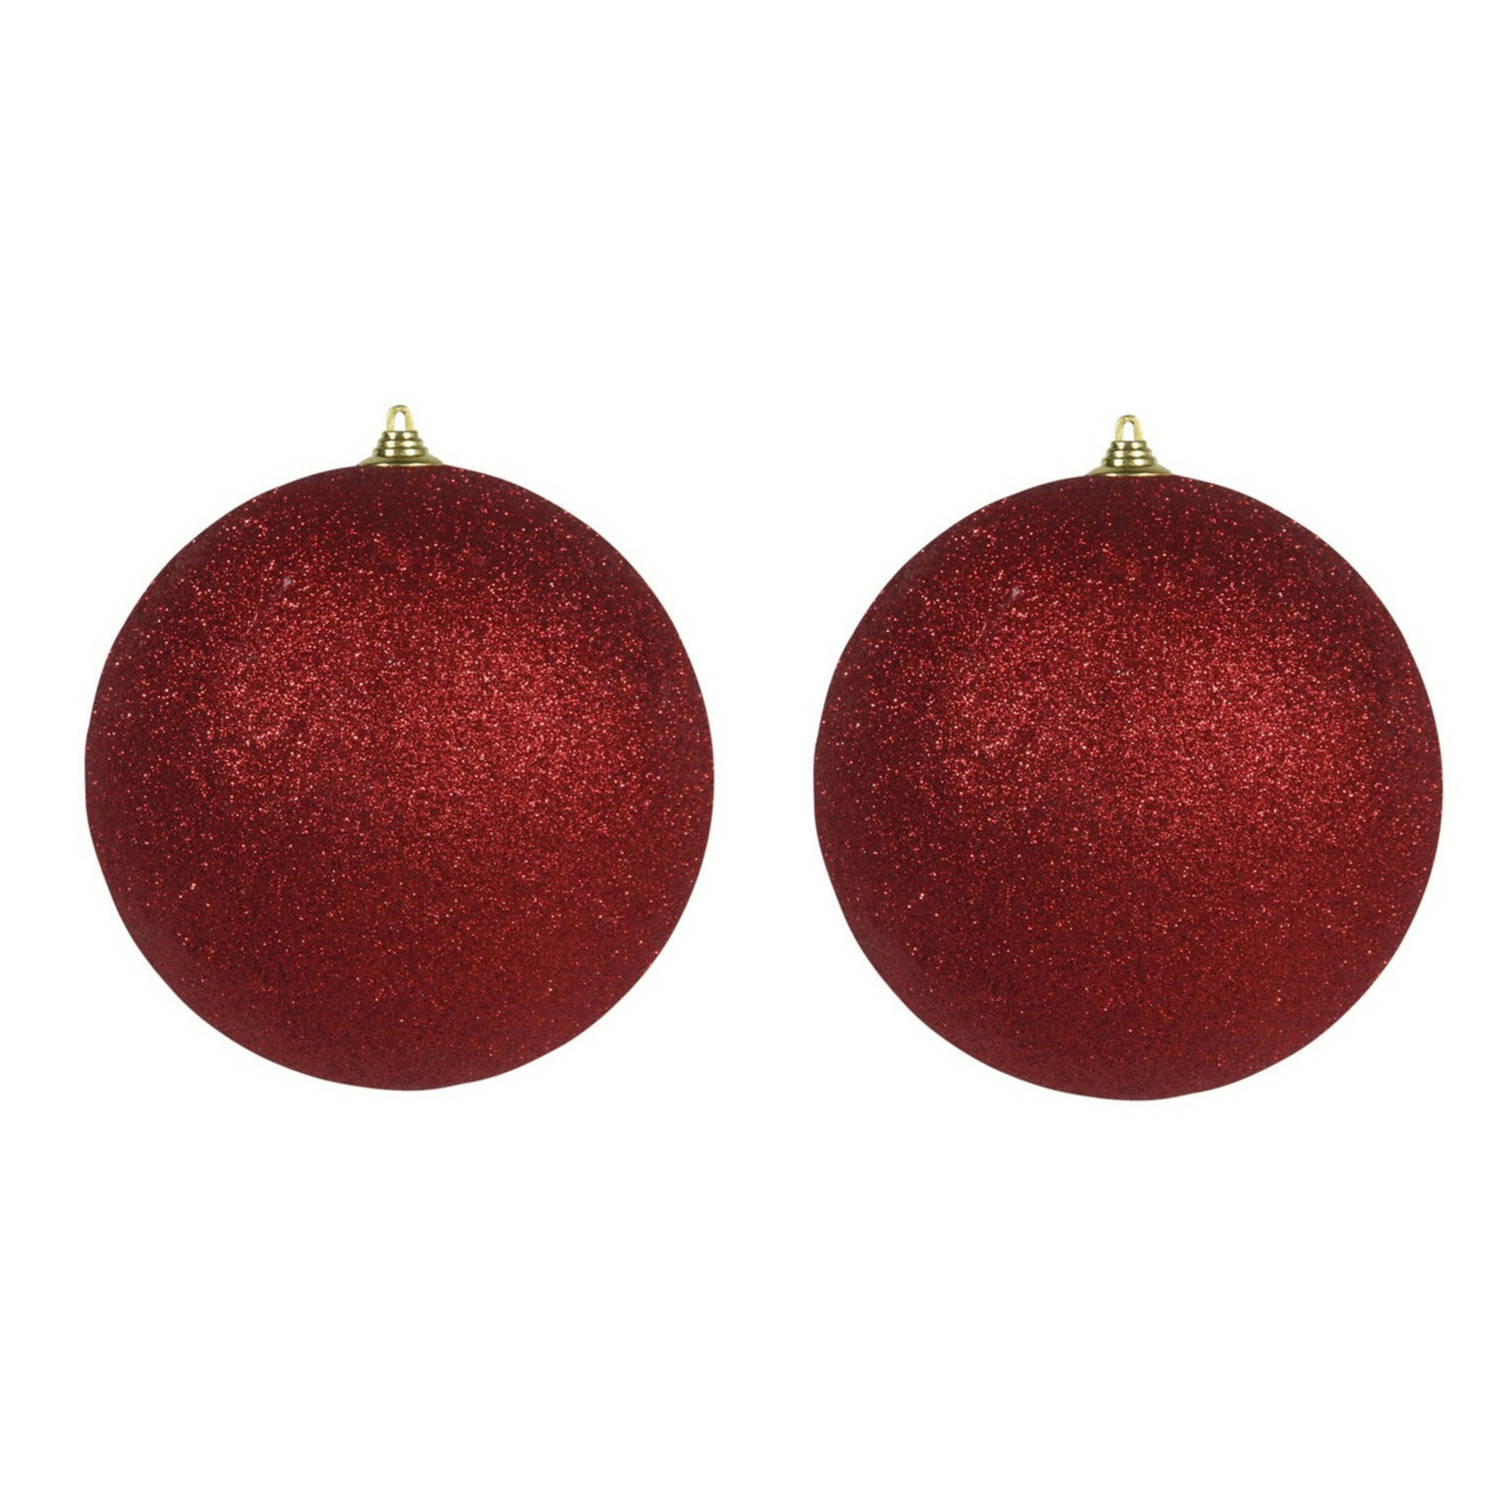 2x Rode Grote Glitter Kerstballen 18 Cm Hangdecoratie-Boomversiering Glitter Kerstballen